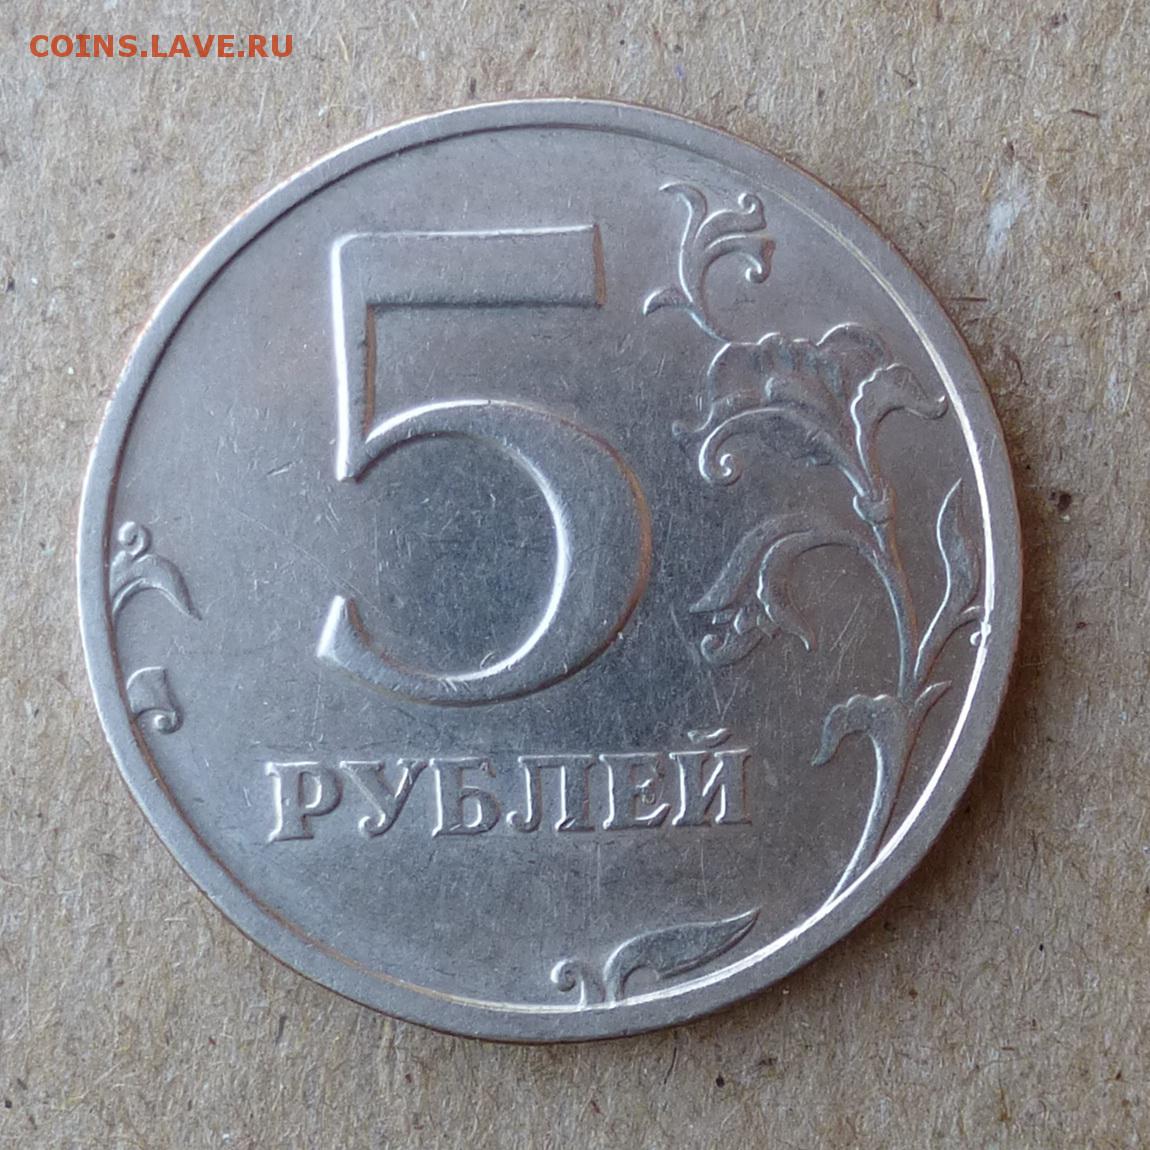 Самый маленький рубль в мире. 1 2 5 Рублей 2003 года. Монеты 5 и 10 рублей. 5 Рублей железные. Фотография 5 рублей.